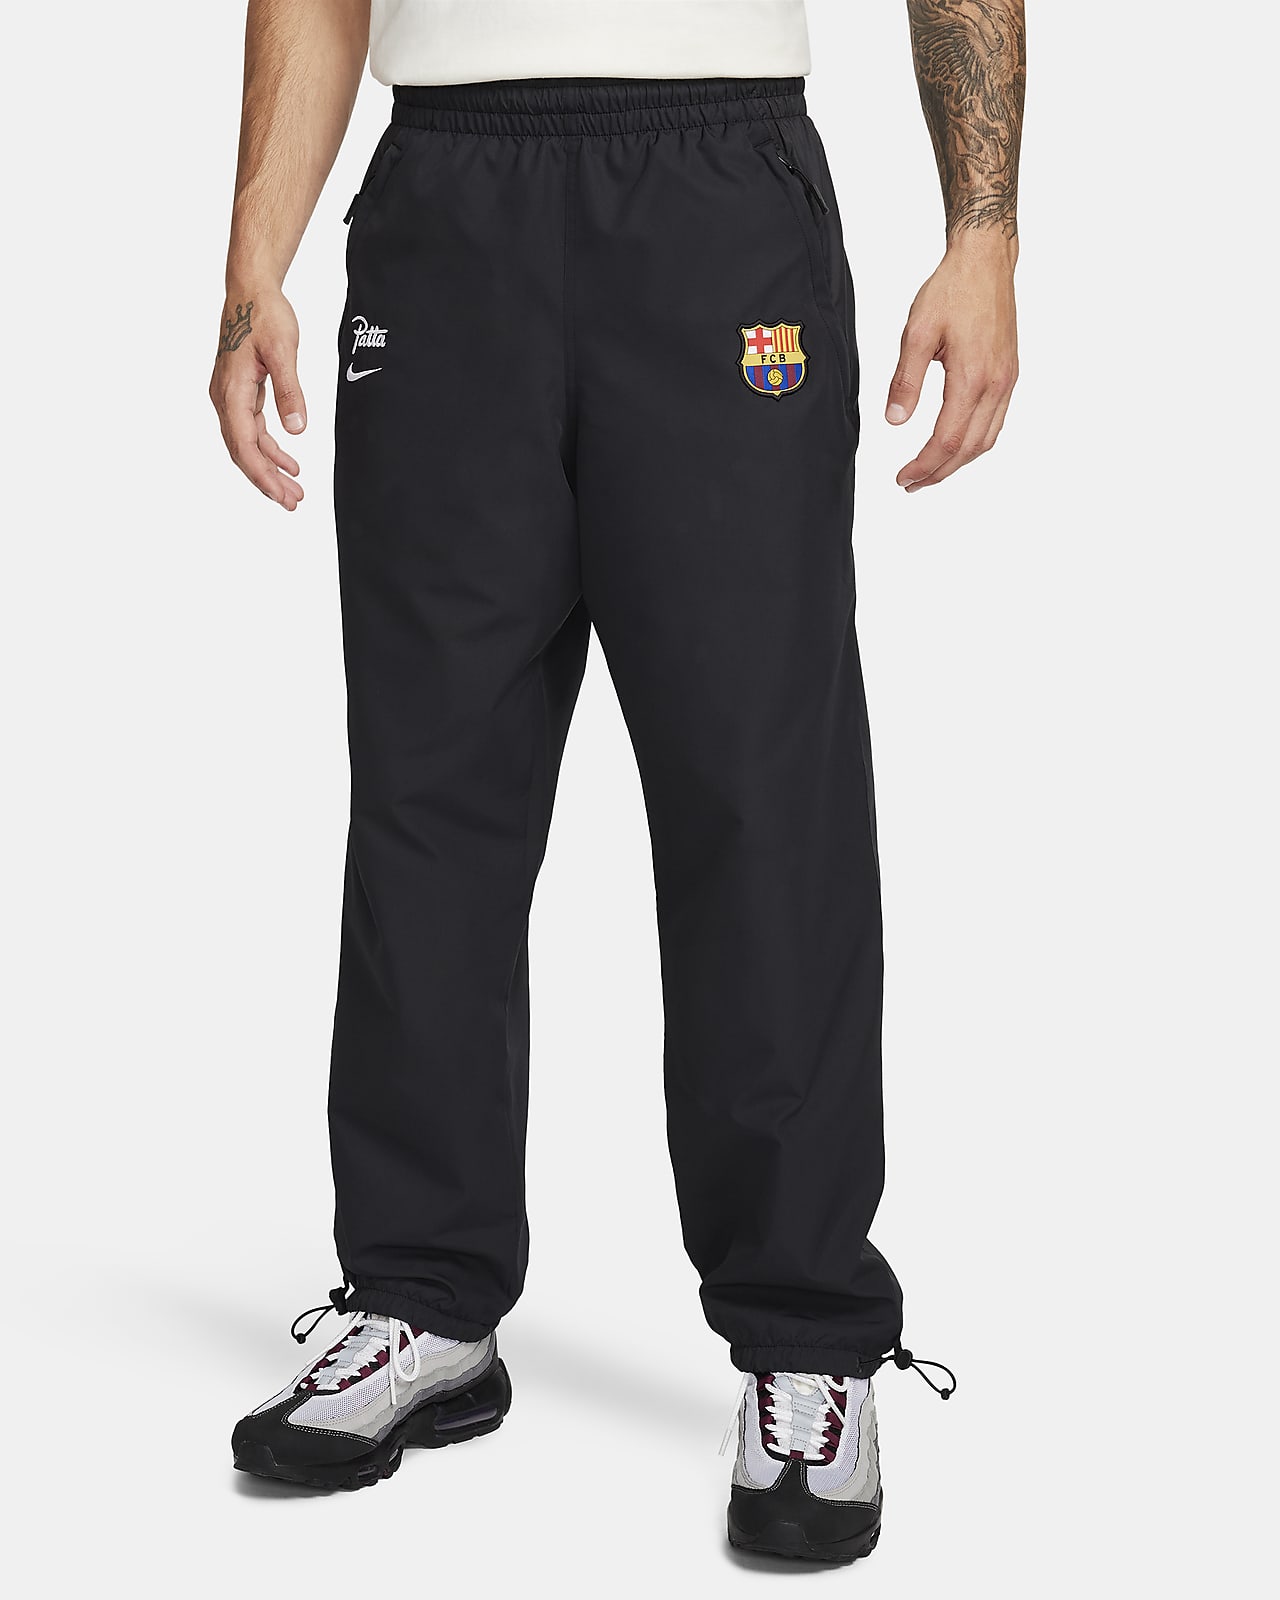 Pantalon de survêtement Nike Football FC Barcelona x Patta pour homme